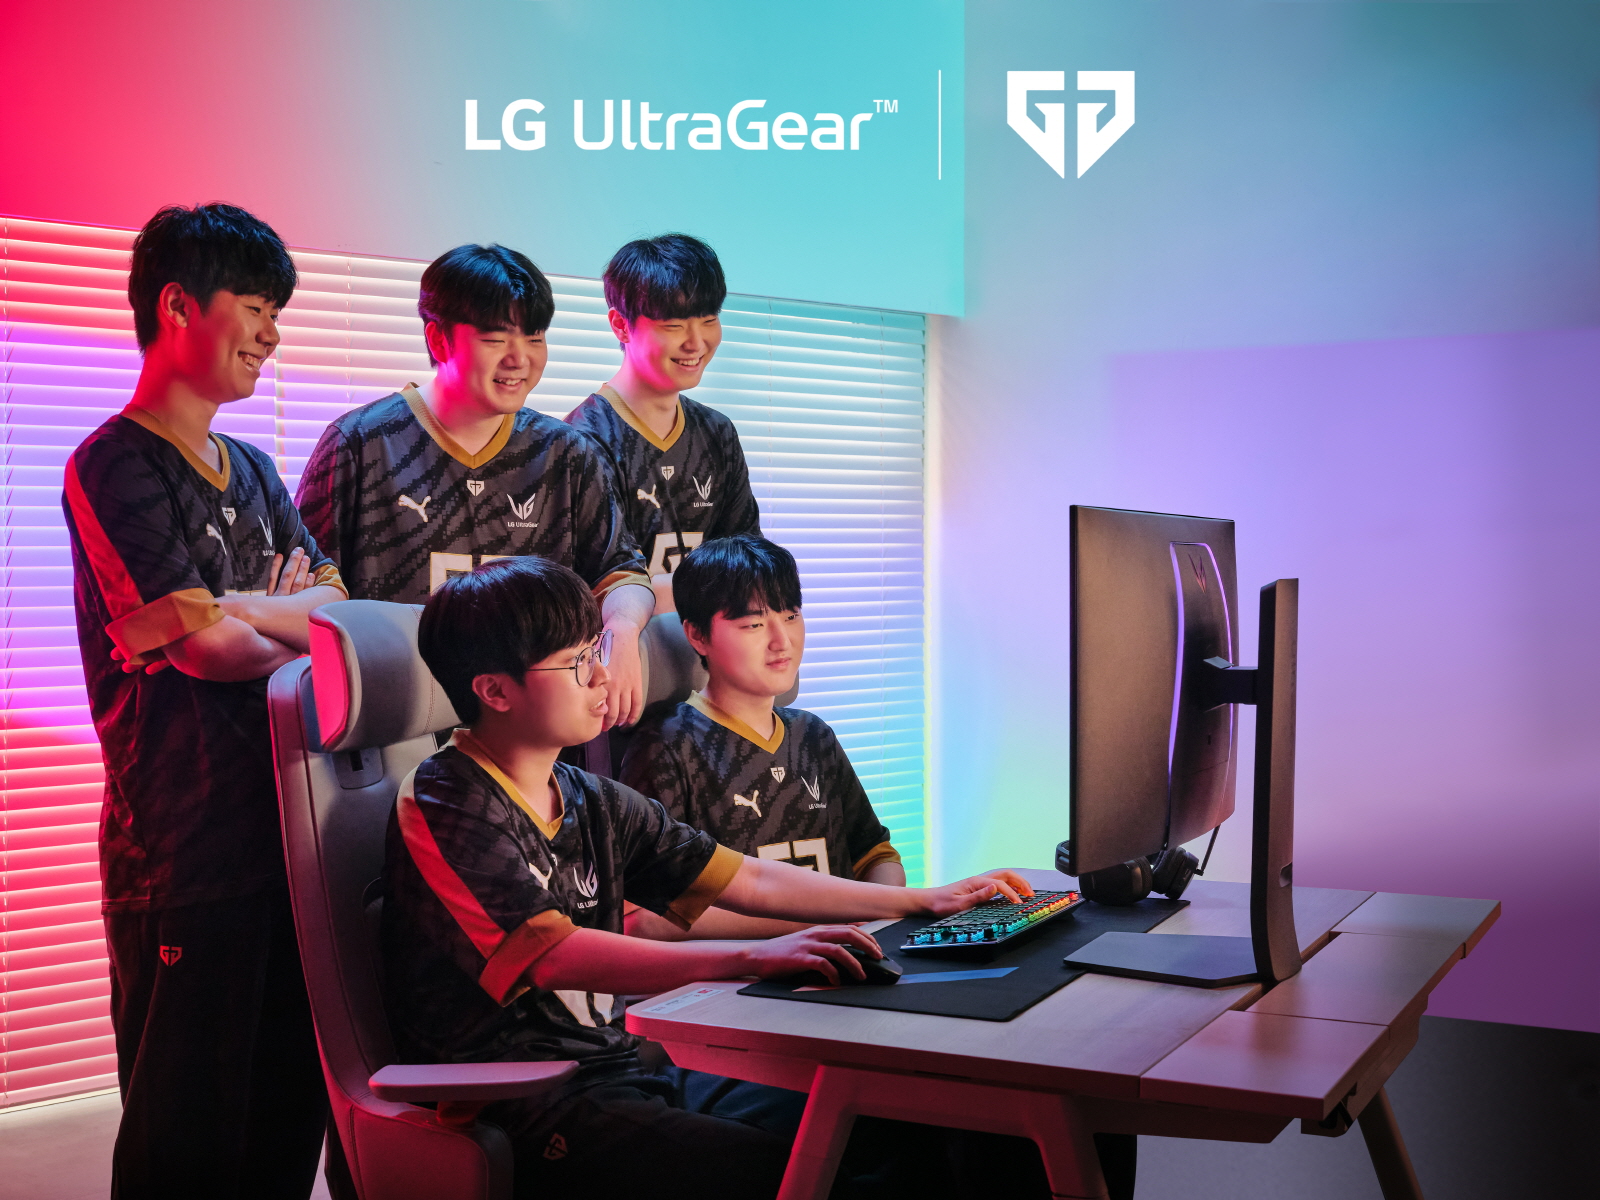 LG UltraGear a la vanguardia de los e-sports gracias a su colaboración con Gen.G